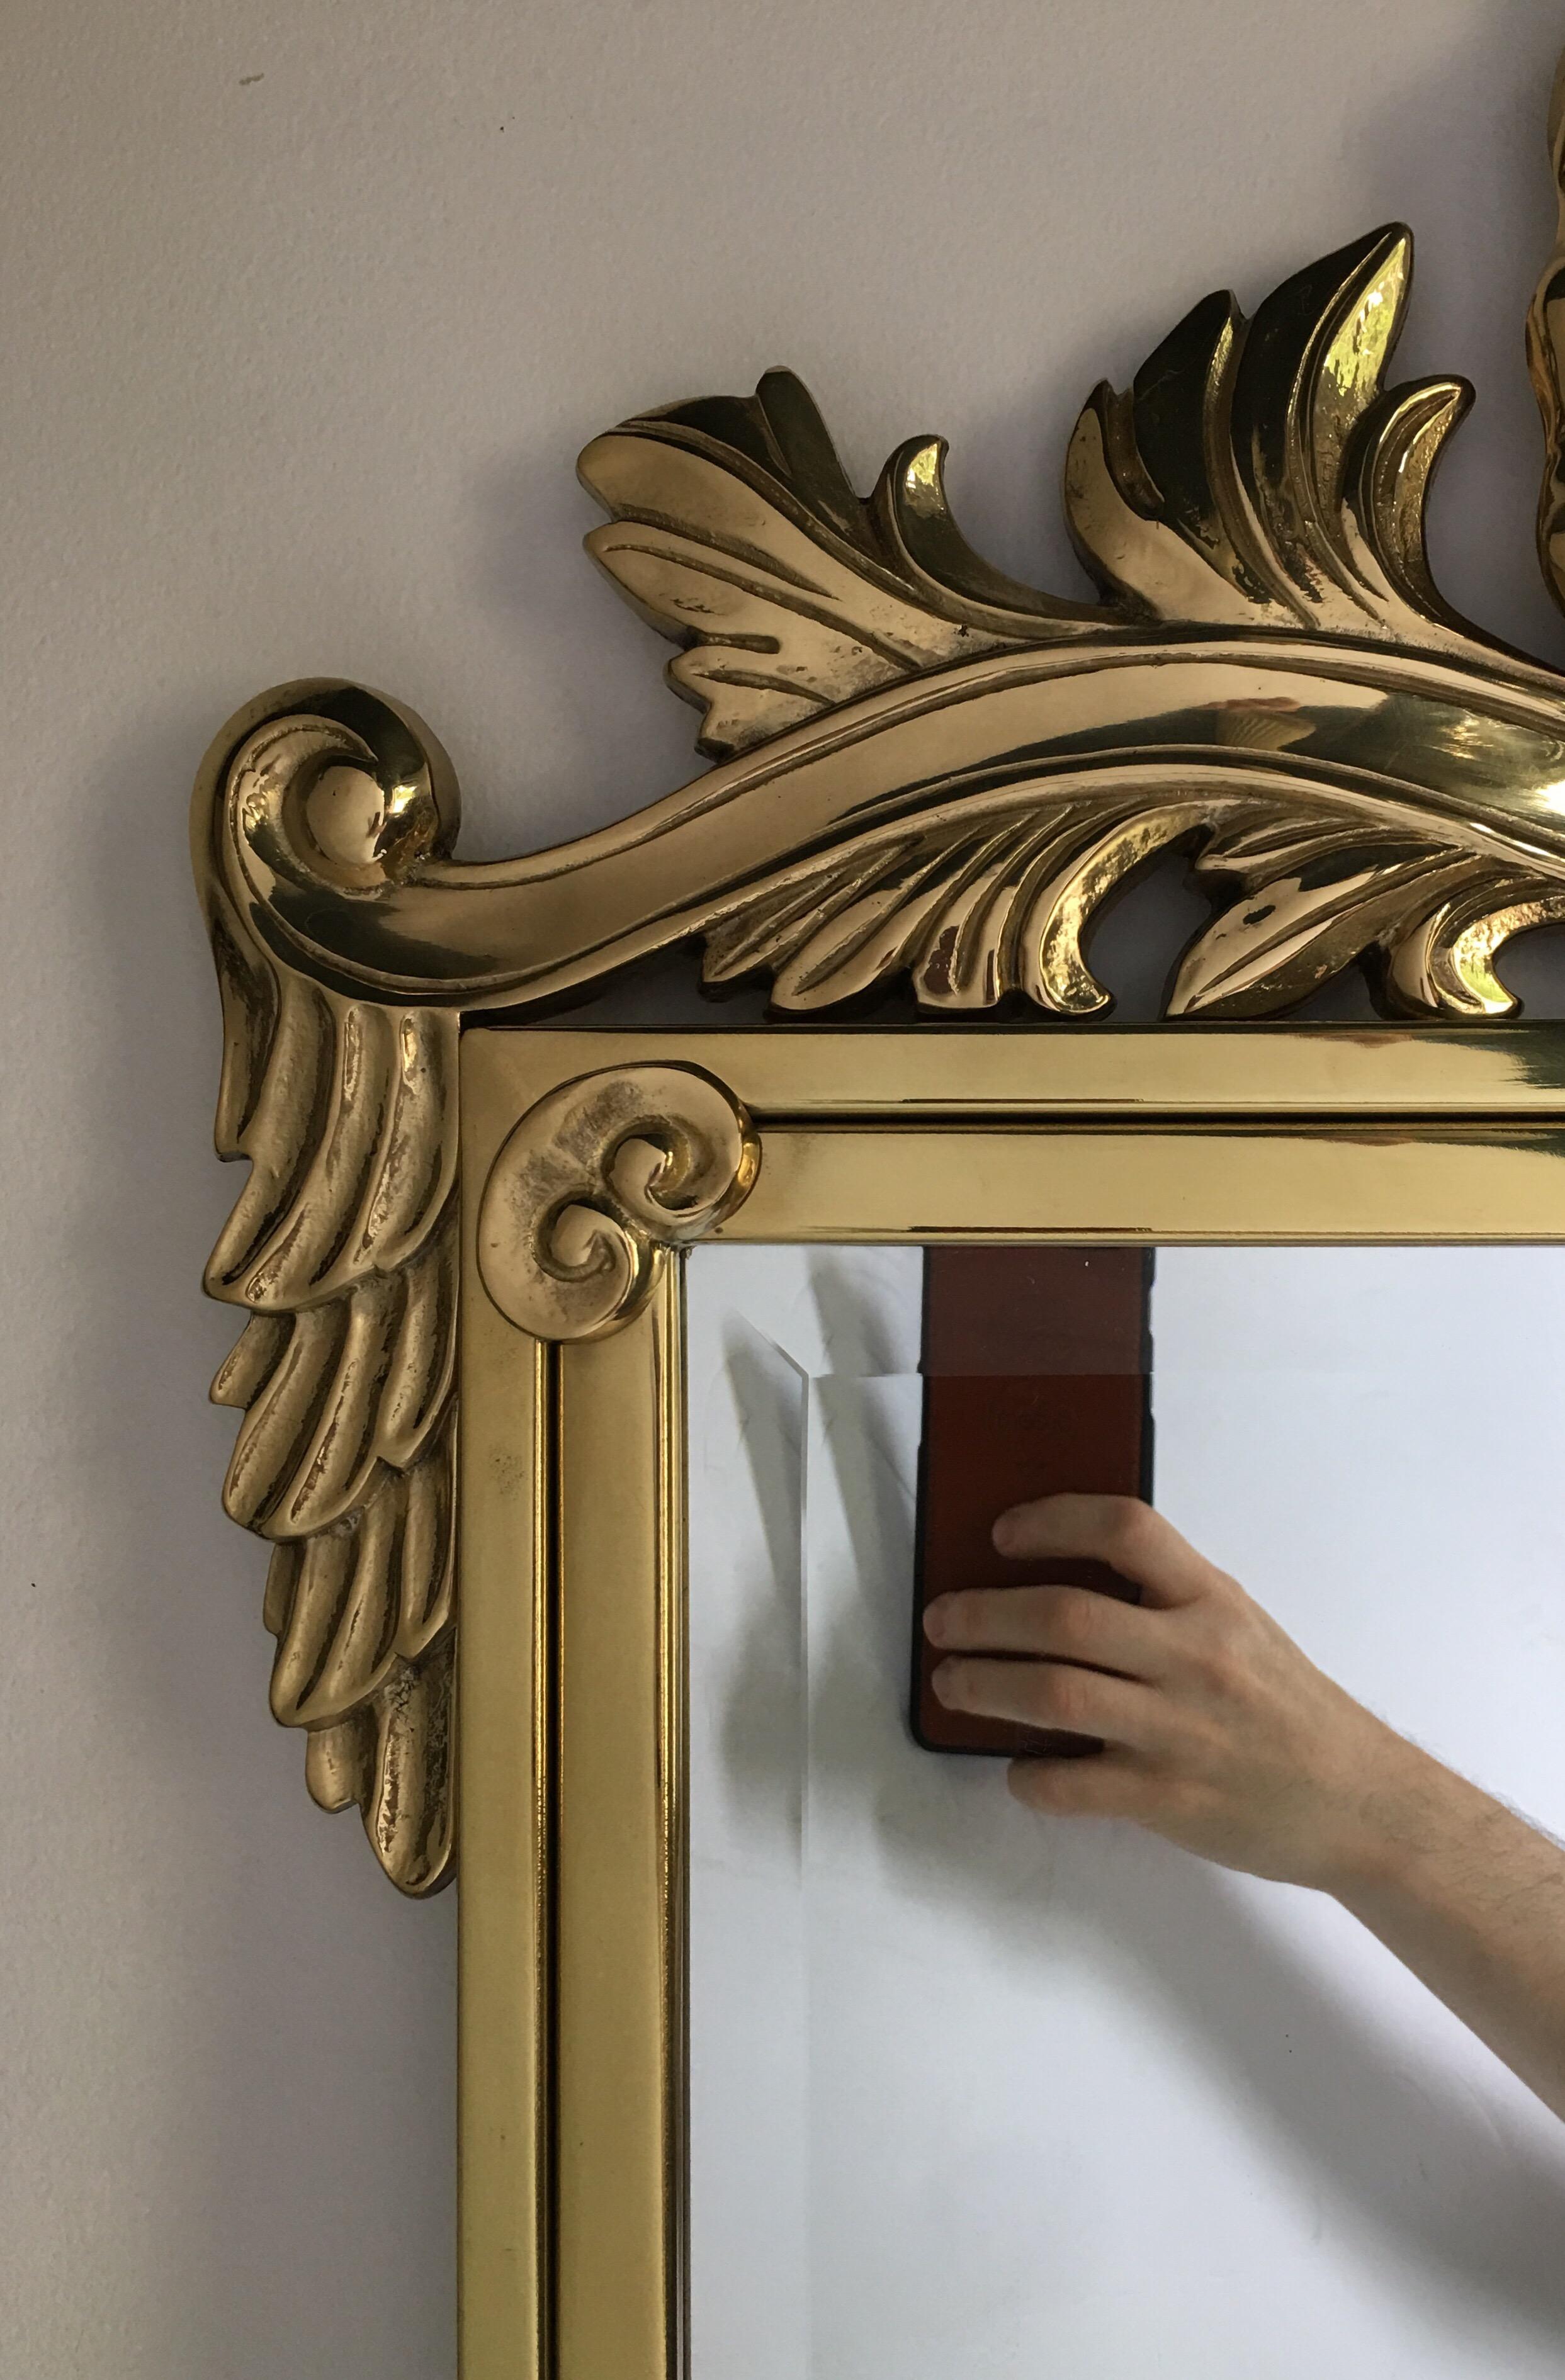 Miroir mural décoratif italien en laiton poli de style Hollywood Regency, dans le style de Mastercraft.  Ce grand miroir de forme rectangulaire présente un motif de coquille finement moulé.
